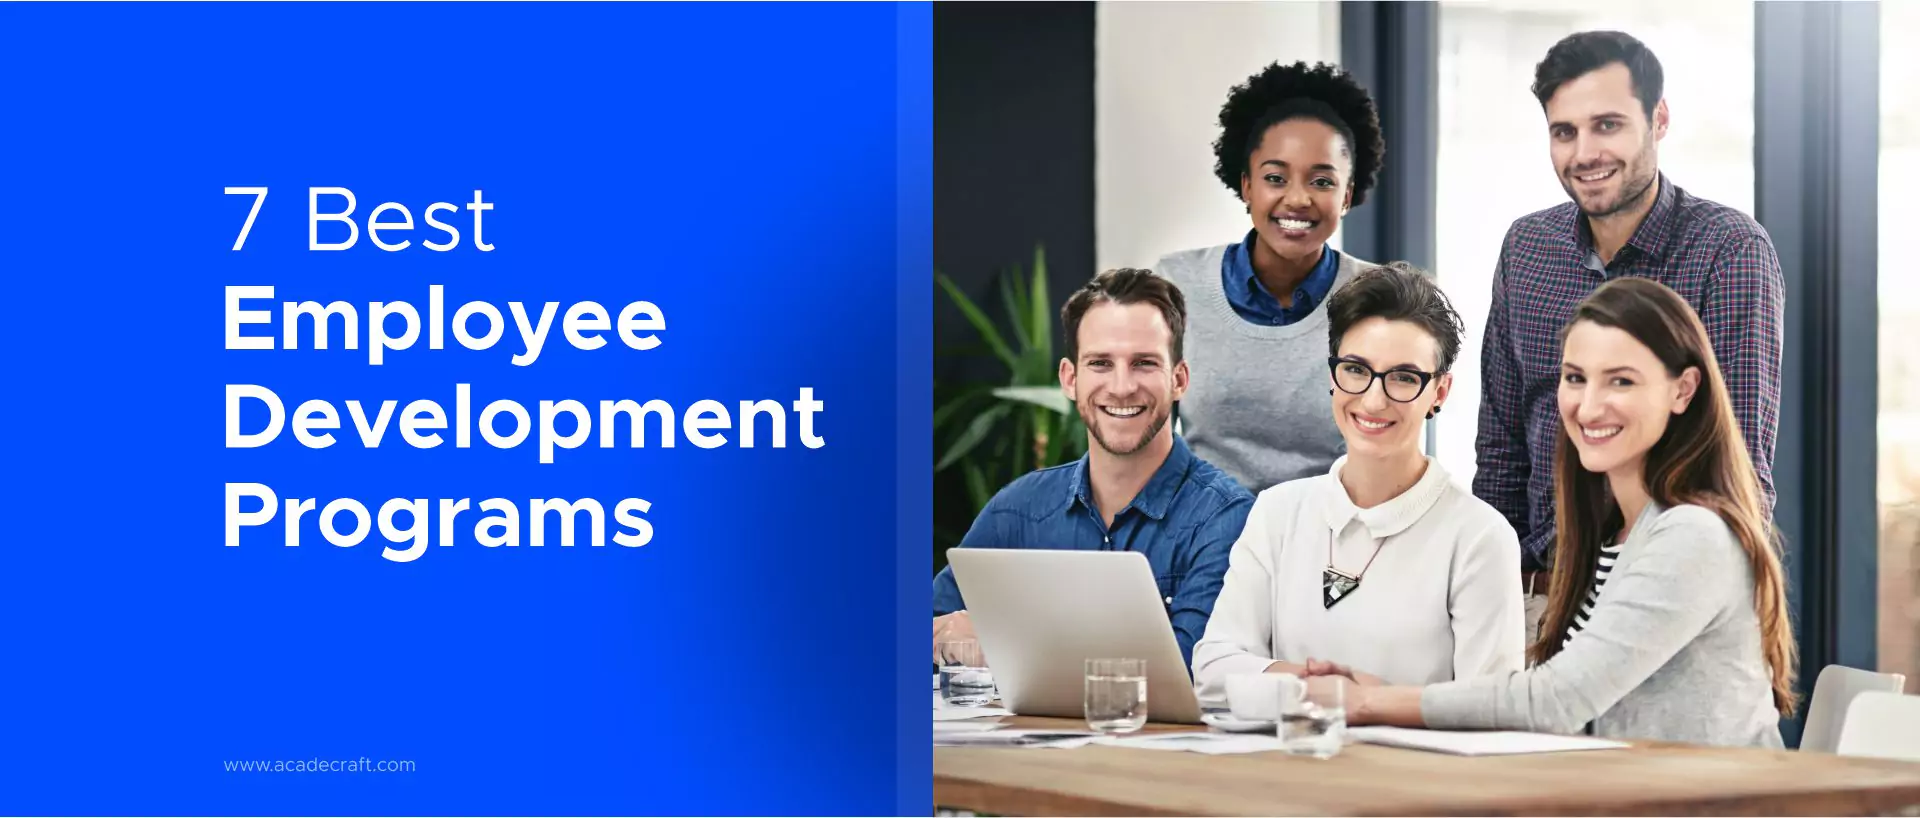 7 Best Employee Development Programs